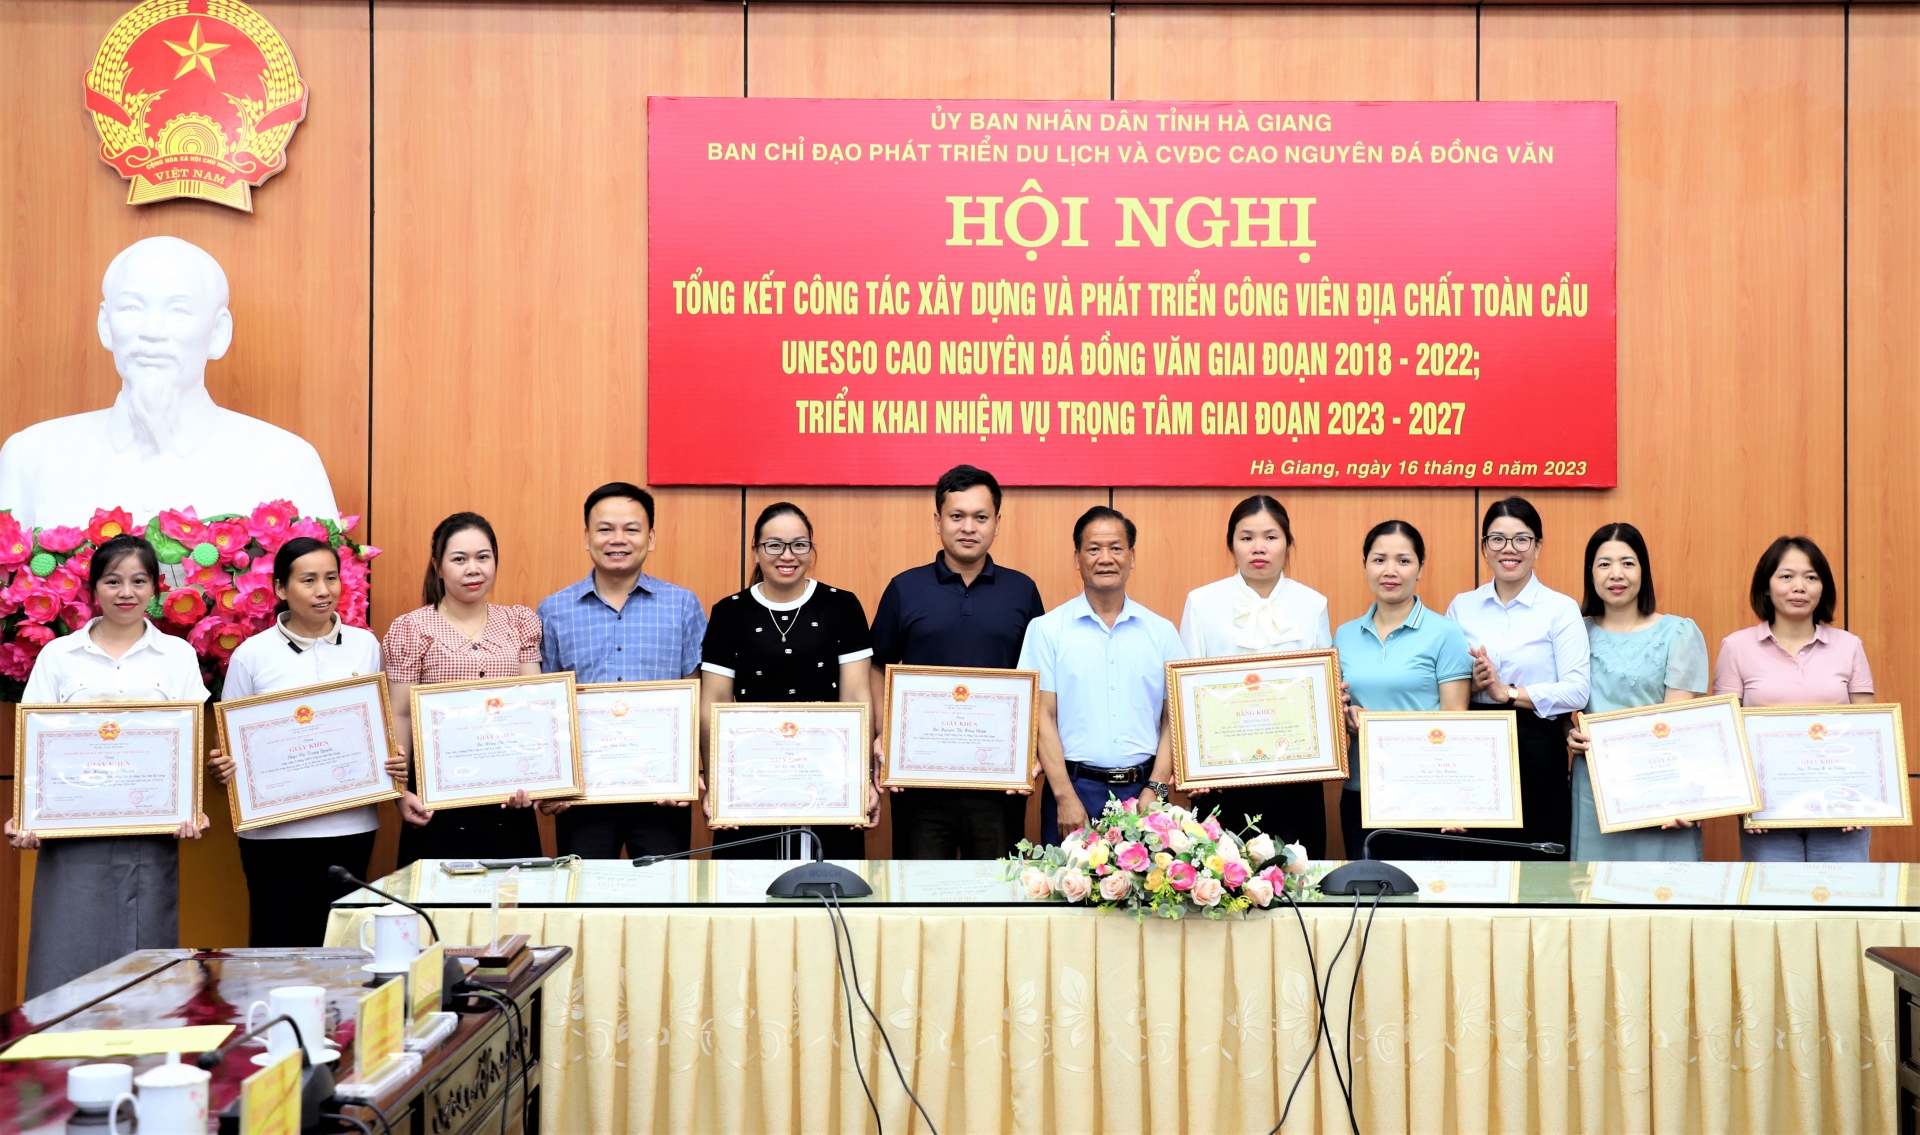 Hà Giang: Tổng kết công tác xây dựng và phát triển Công viên Địa chất toàn cầu Unesco Cao nguyên đá Đồng Văn giai đoạn 2018 – 2022 - Ảnh 9.